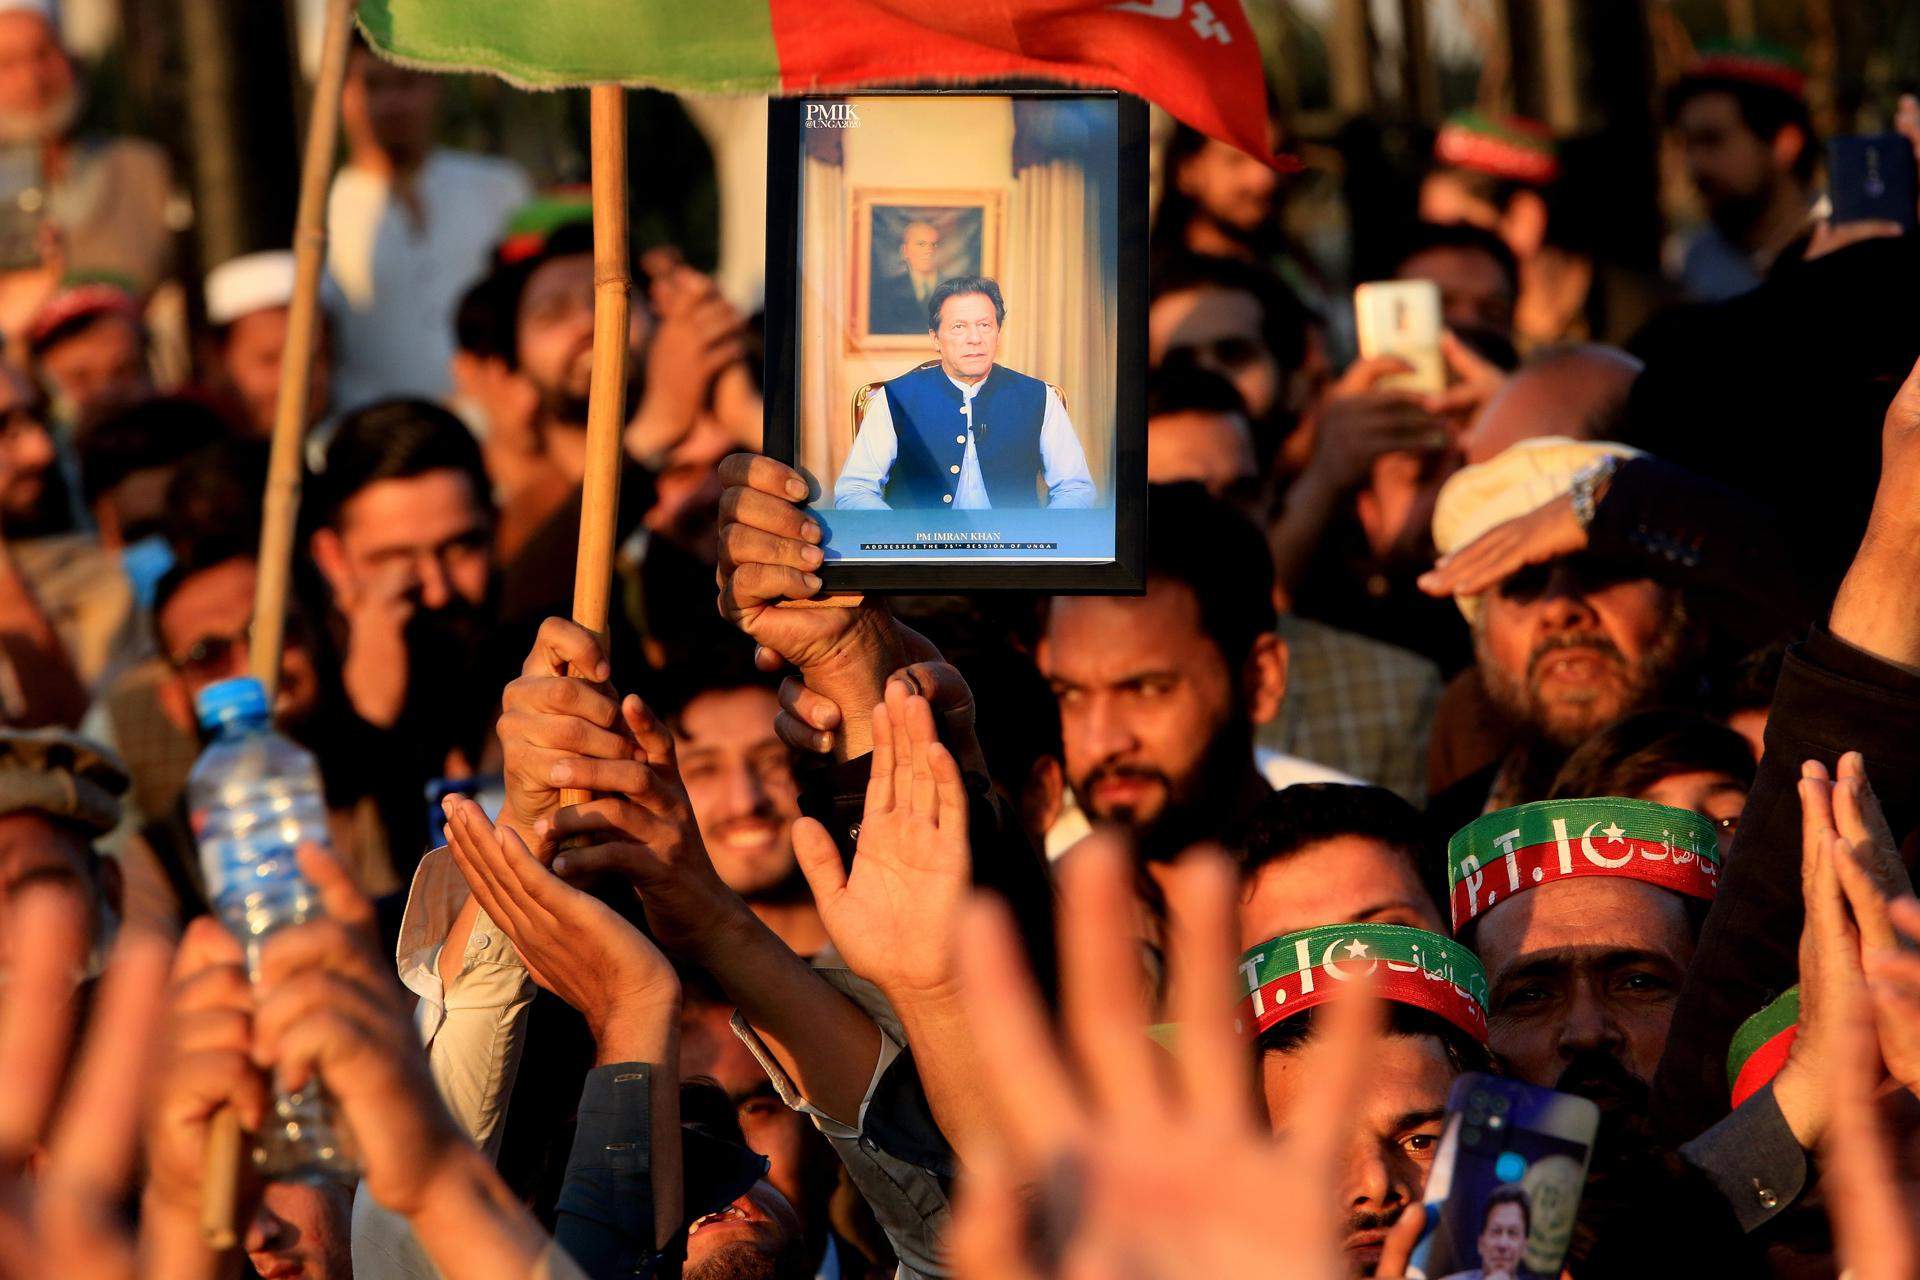 Agitació al Pakistan: l'empresonat Khan guanya les eleccions sense poder governar i atia els carrers